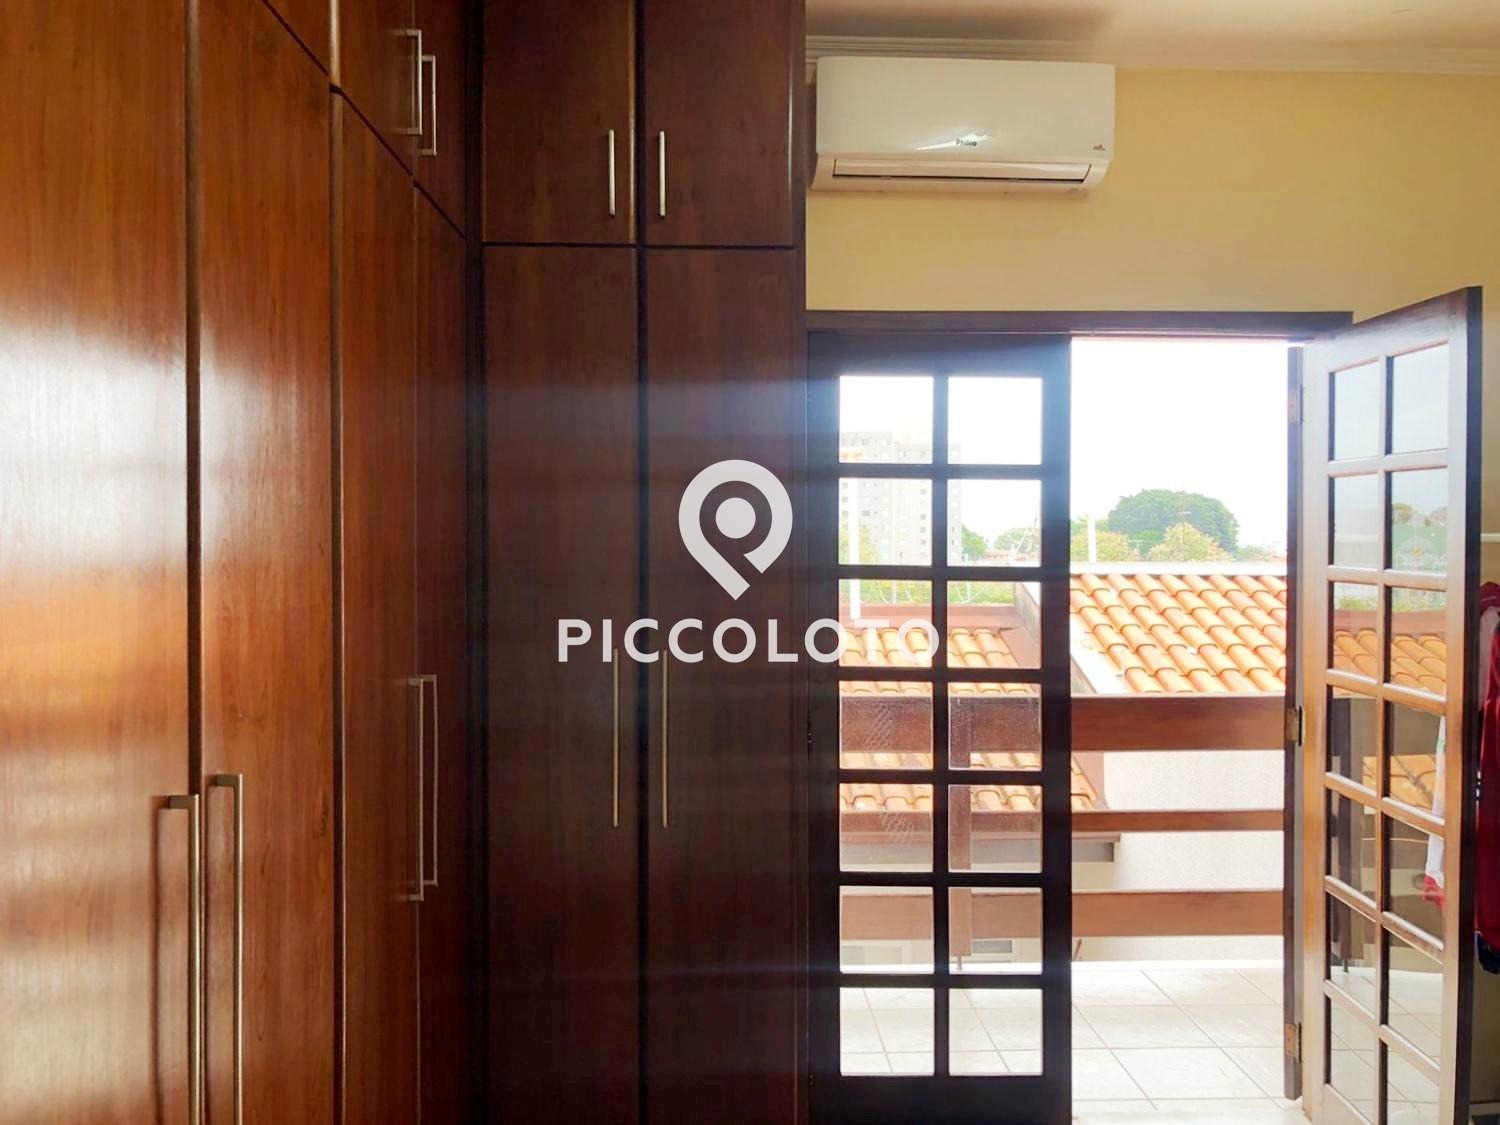 Piccoloto -Casa à venda no Parque Alto Taquaral em Campinas